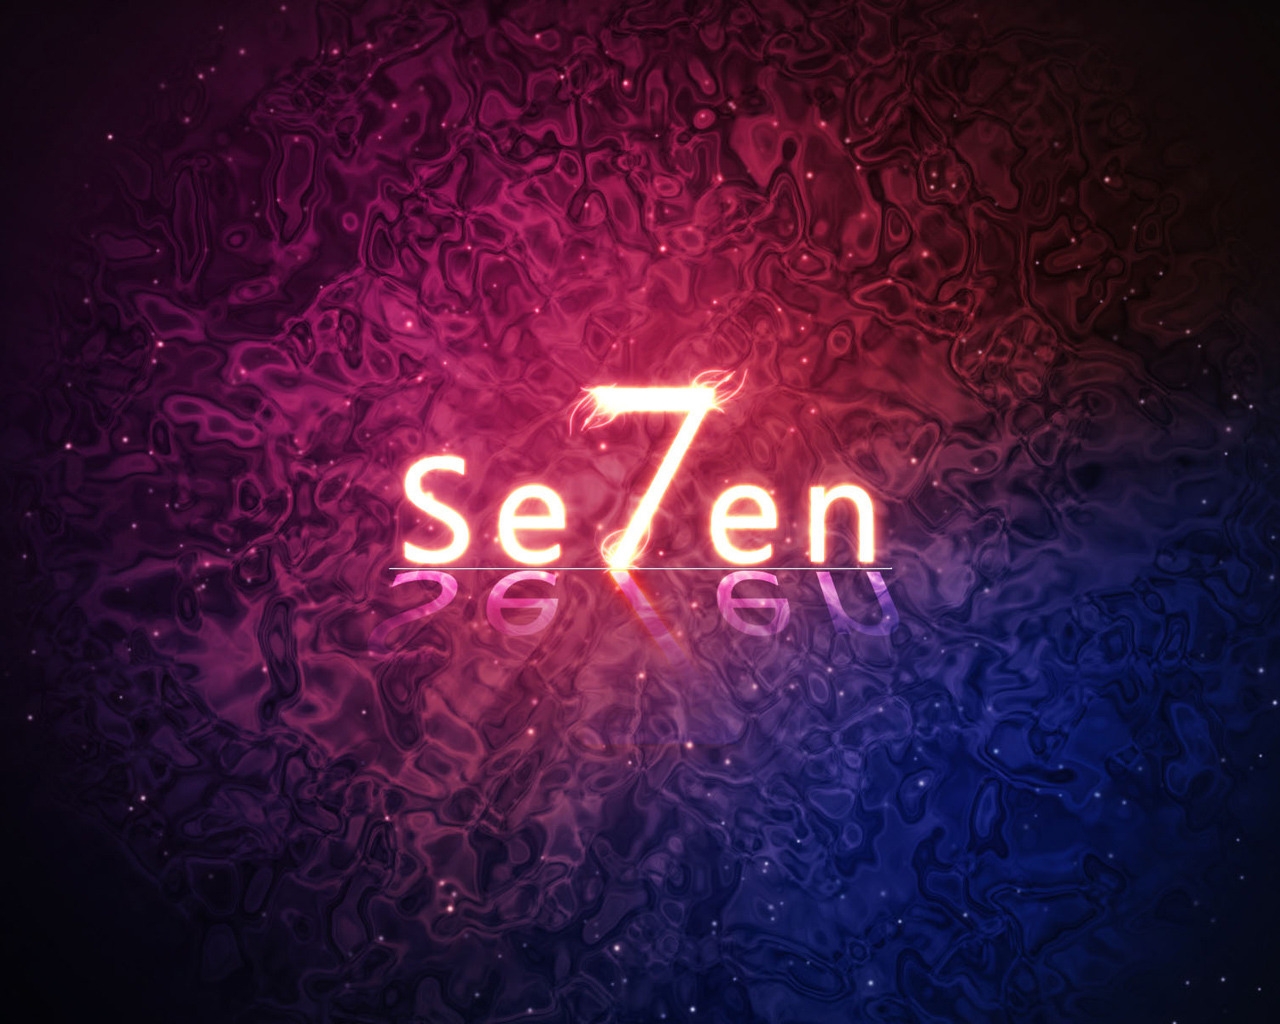 Se7en for 1280 x 1024 resolution